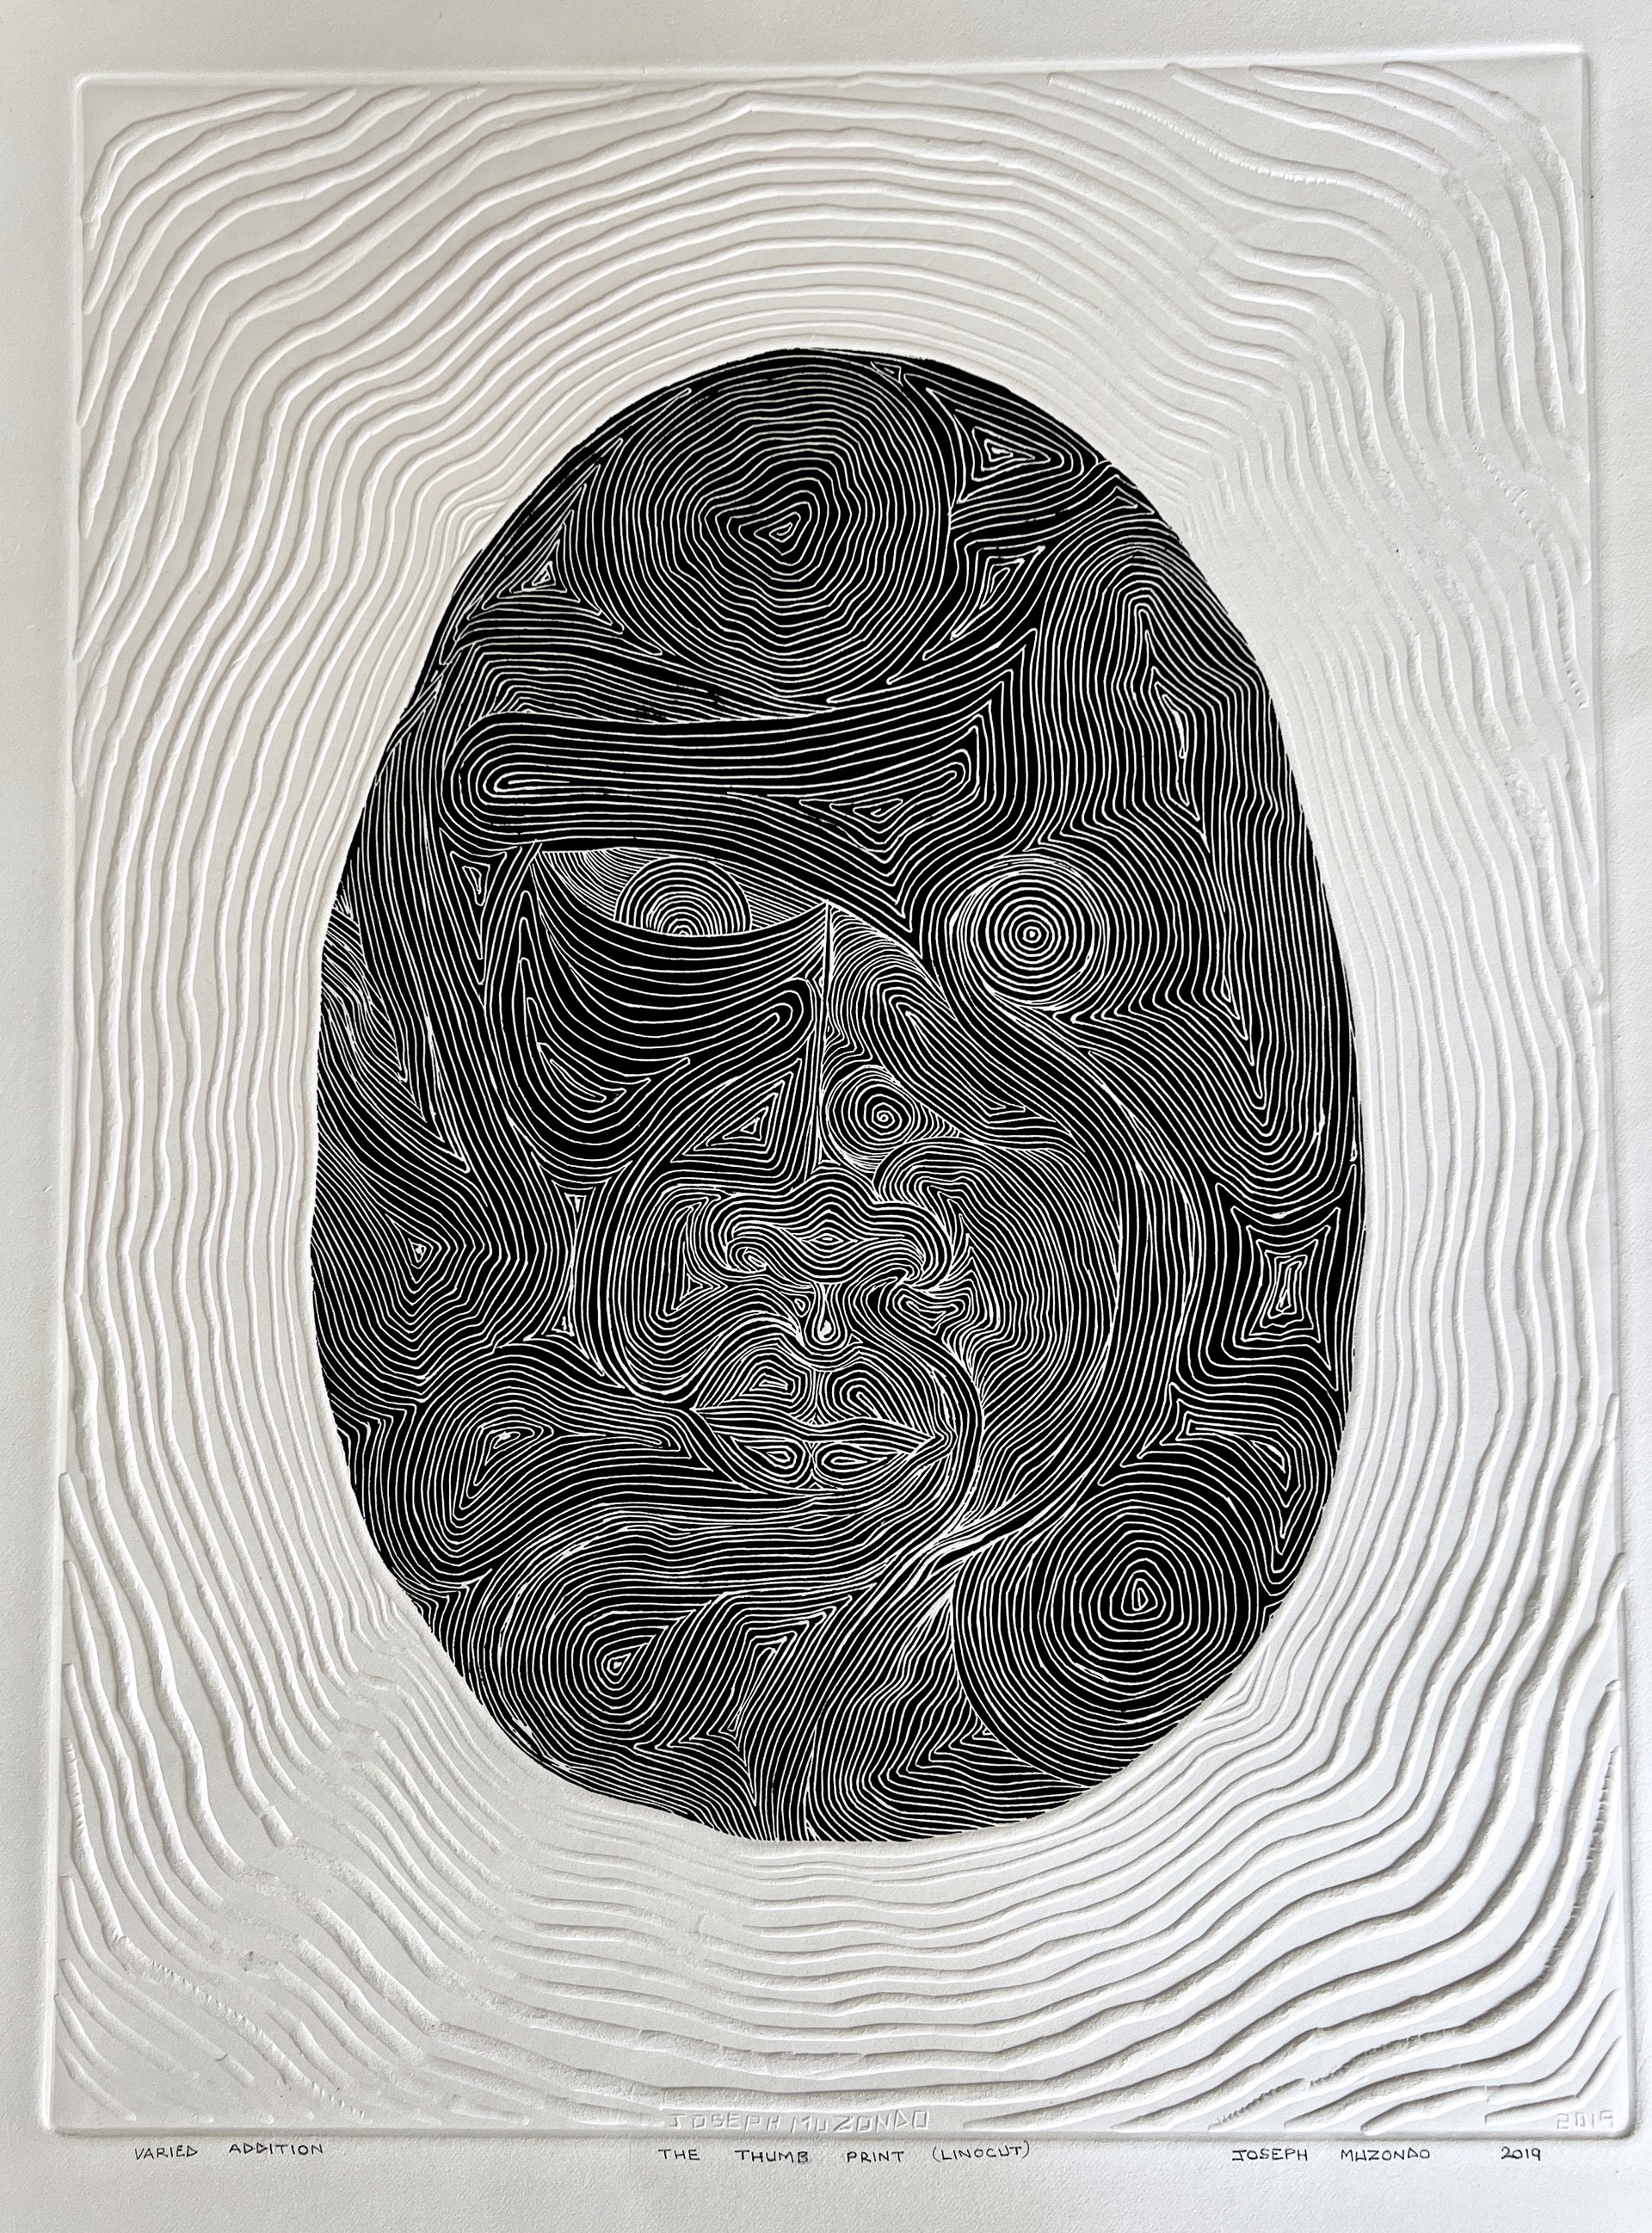 The Thumb Print (Black) by Joseph Muzondo